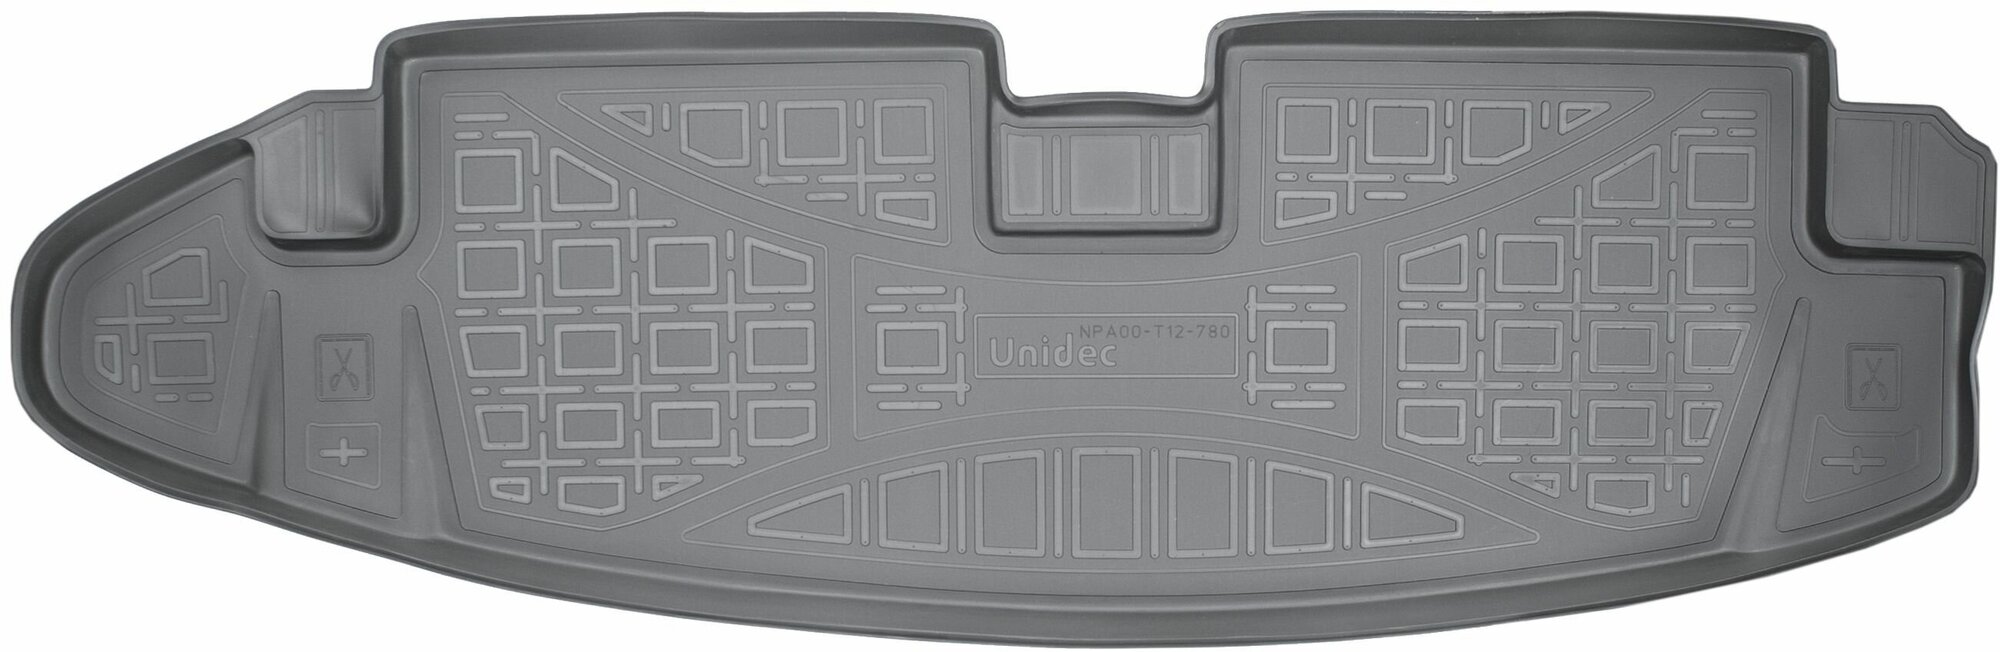 Коврик в багажник (полиуретан) для Chevrolet Trail Blazer GM 800 2012- 7 мест короткий NPA00-T12-780